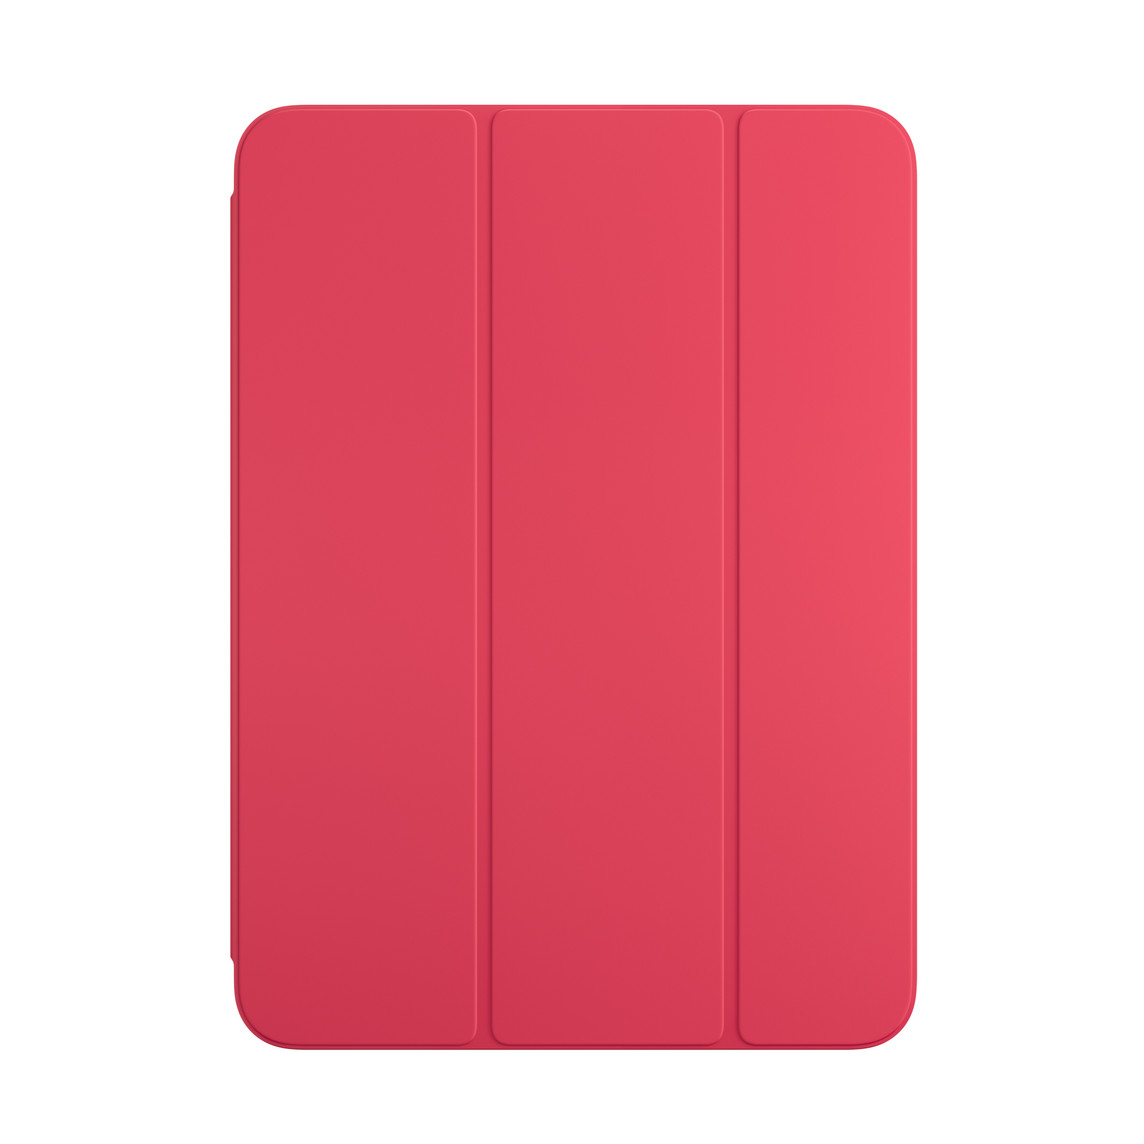 iPad için Karpuz Smart Folio’nun önden görünümü